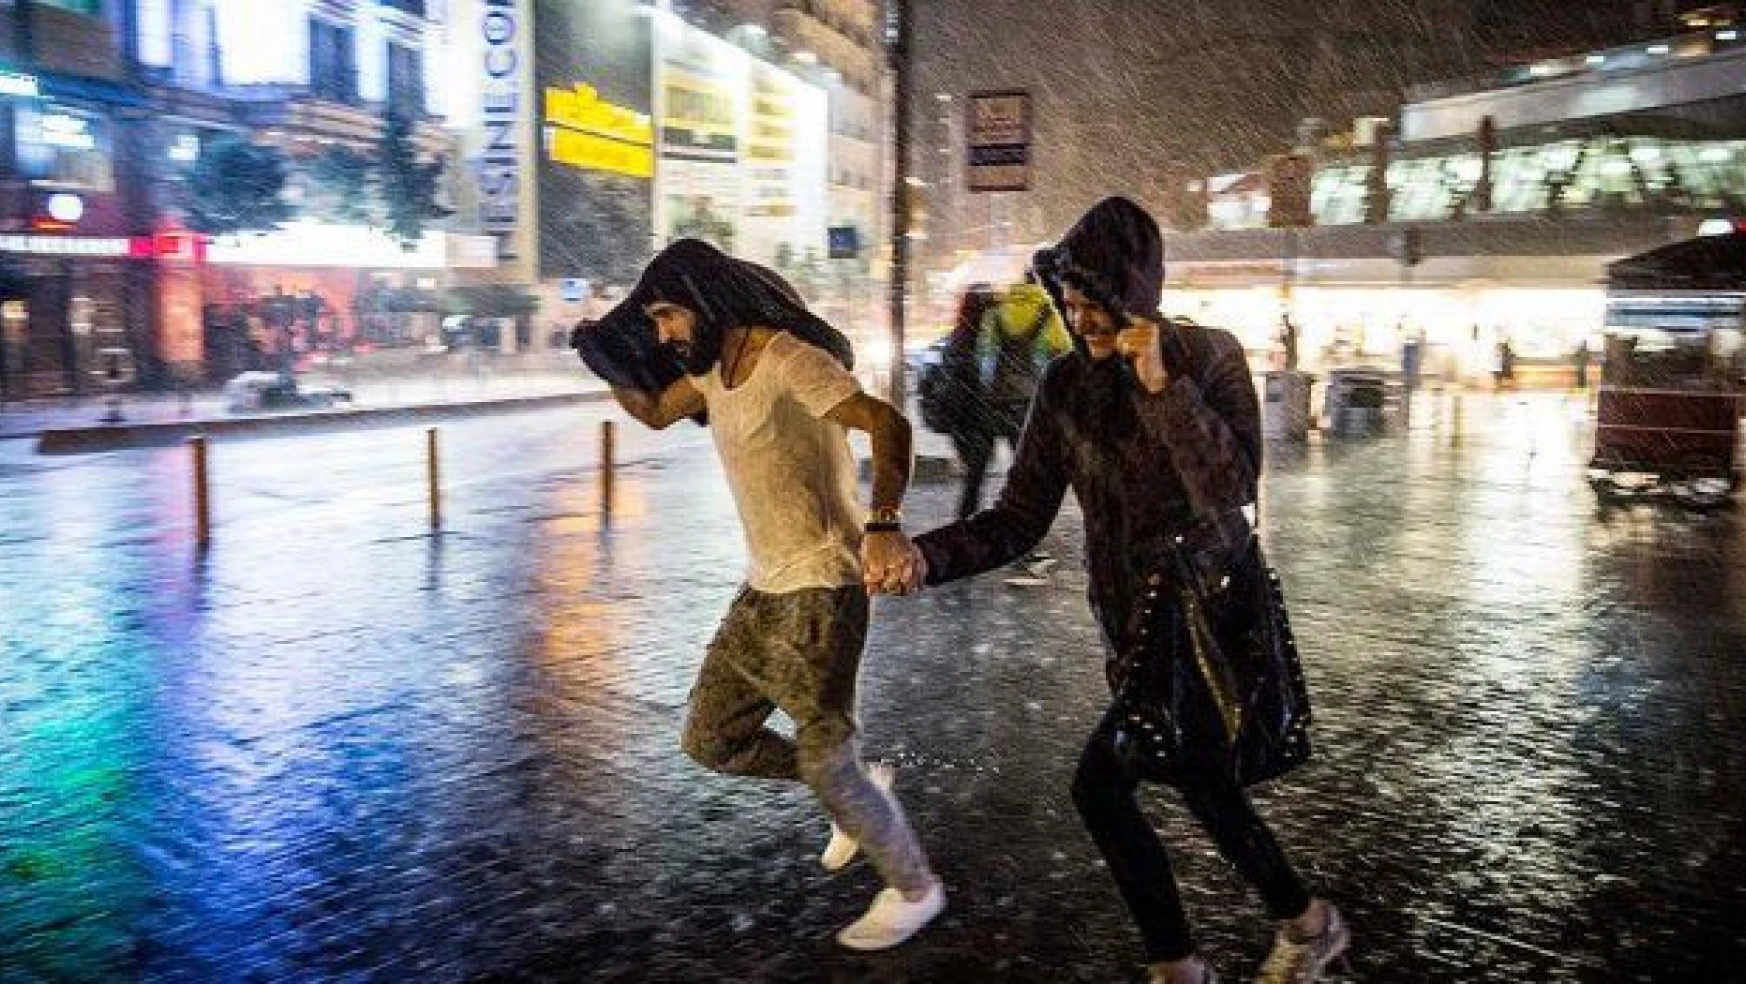 İstanbul'da sağanak yaşamı olumsuz etkiledi